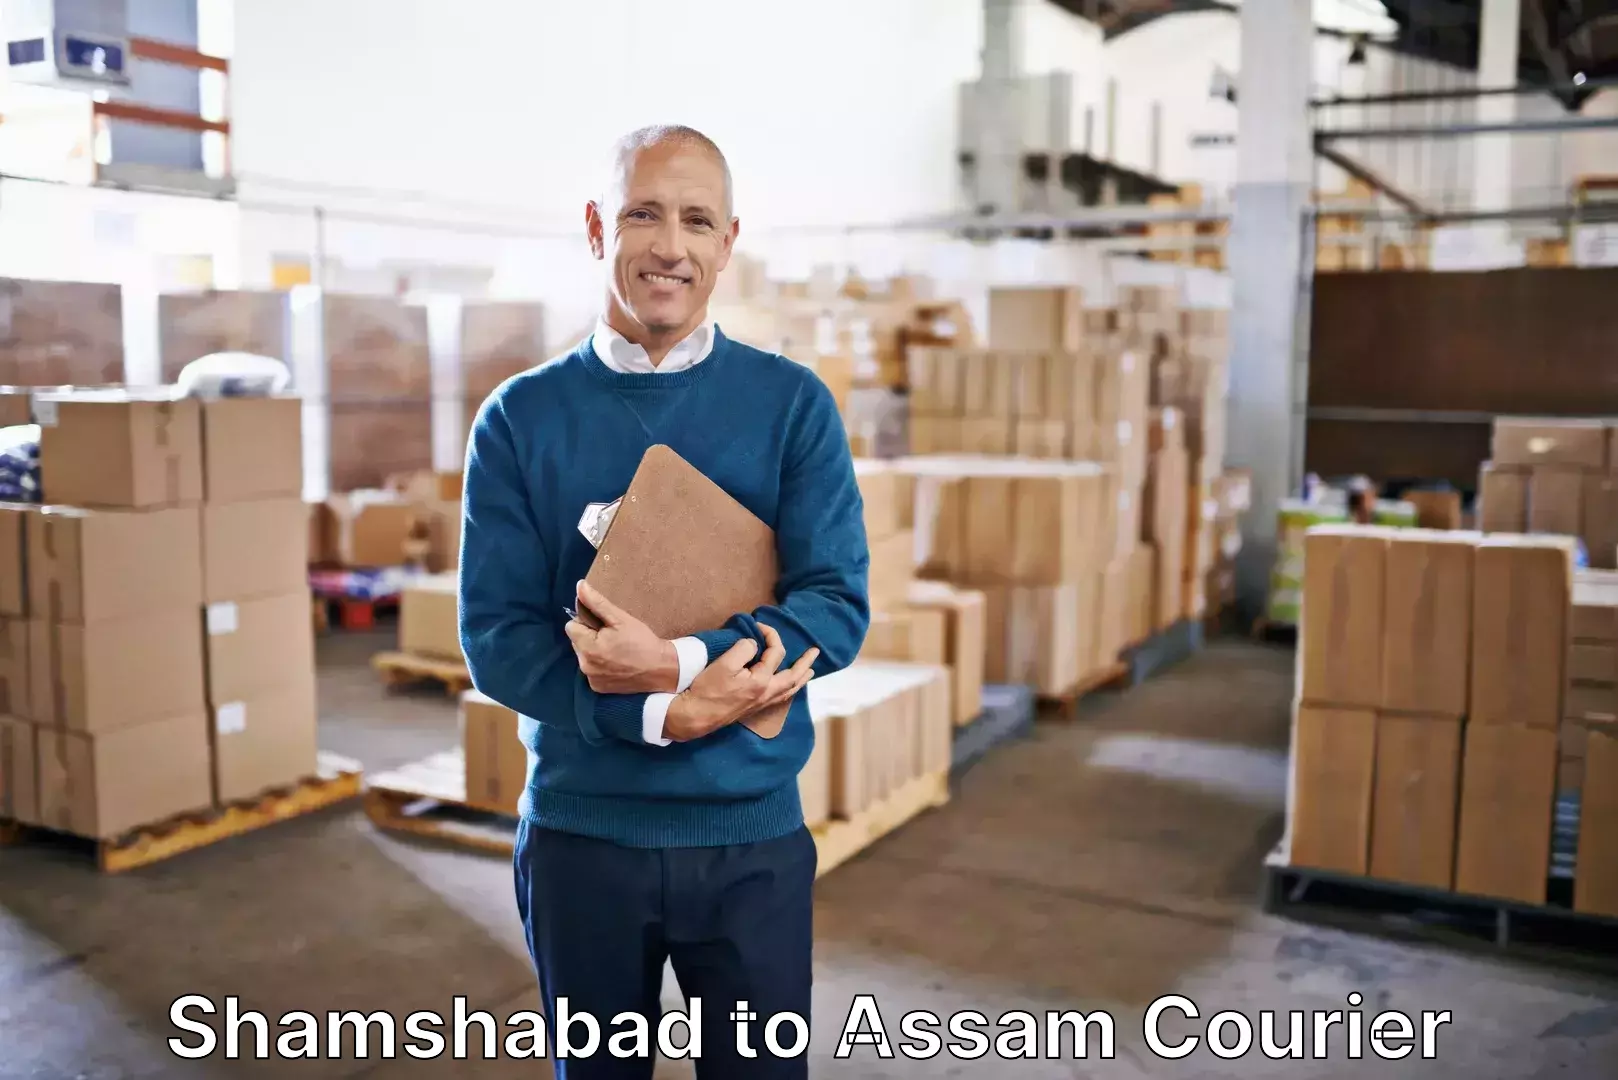 Luggage shipping service Shamshabad to Assam